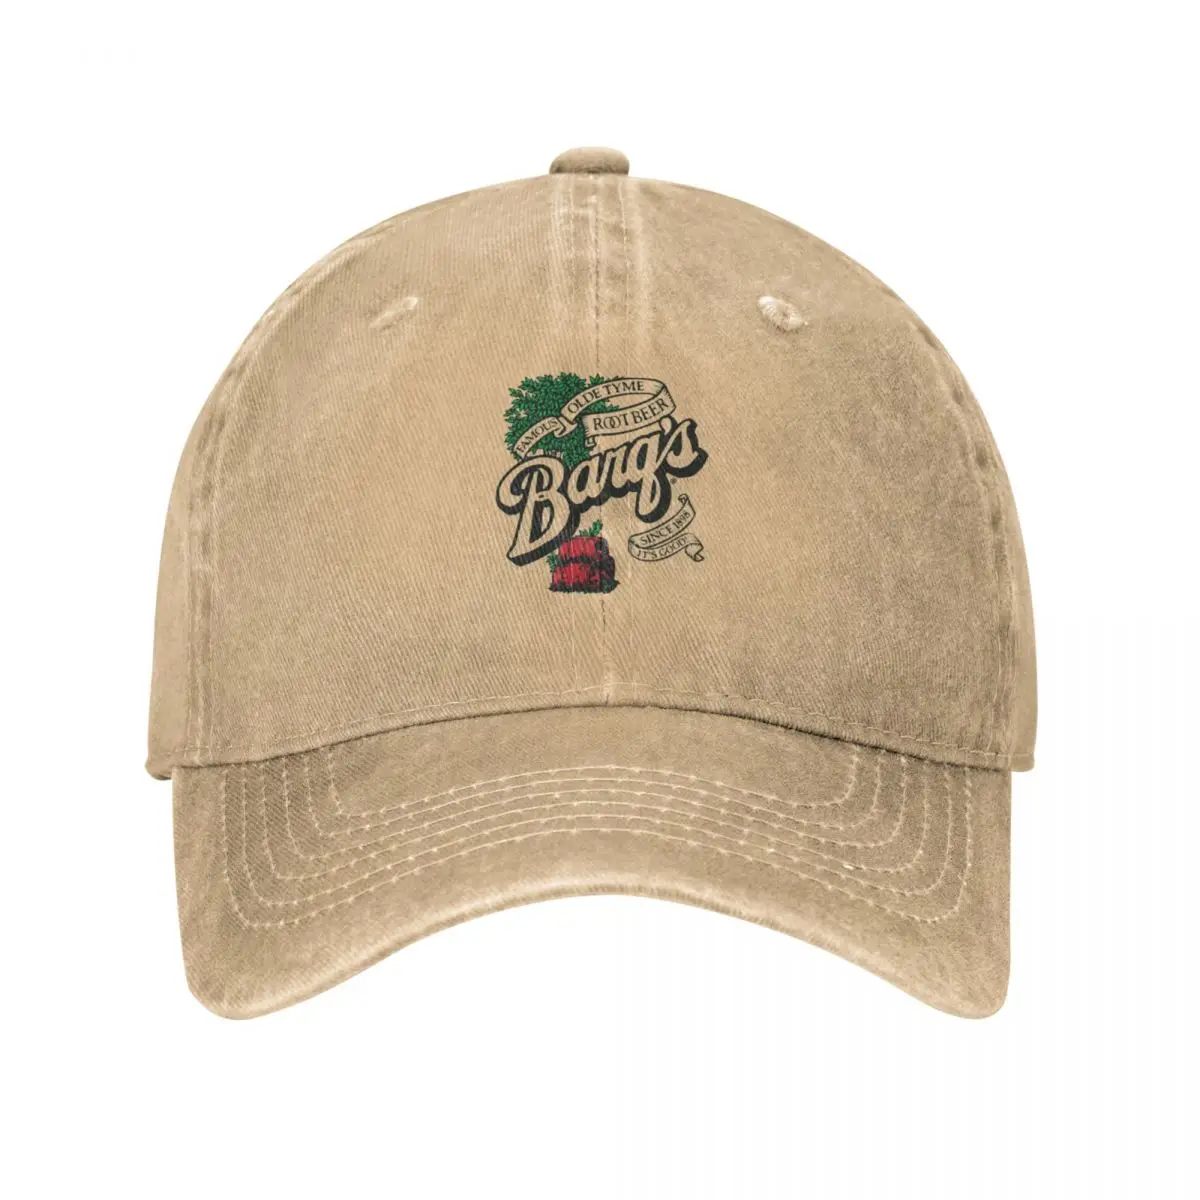 

Barq's Root Beer Logo Cap Cowboy Hat trucker hat uv protection solar hat Brand man caps men's hat luxury Women's